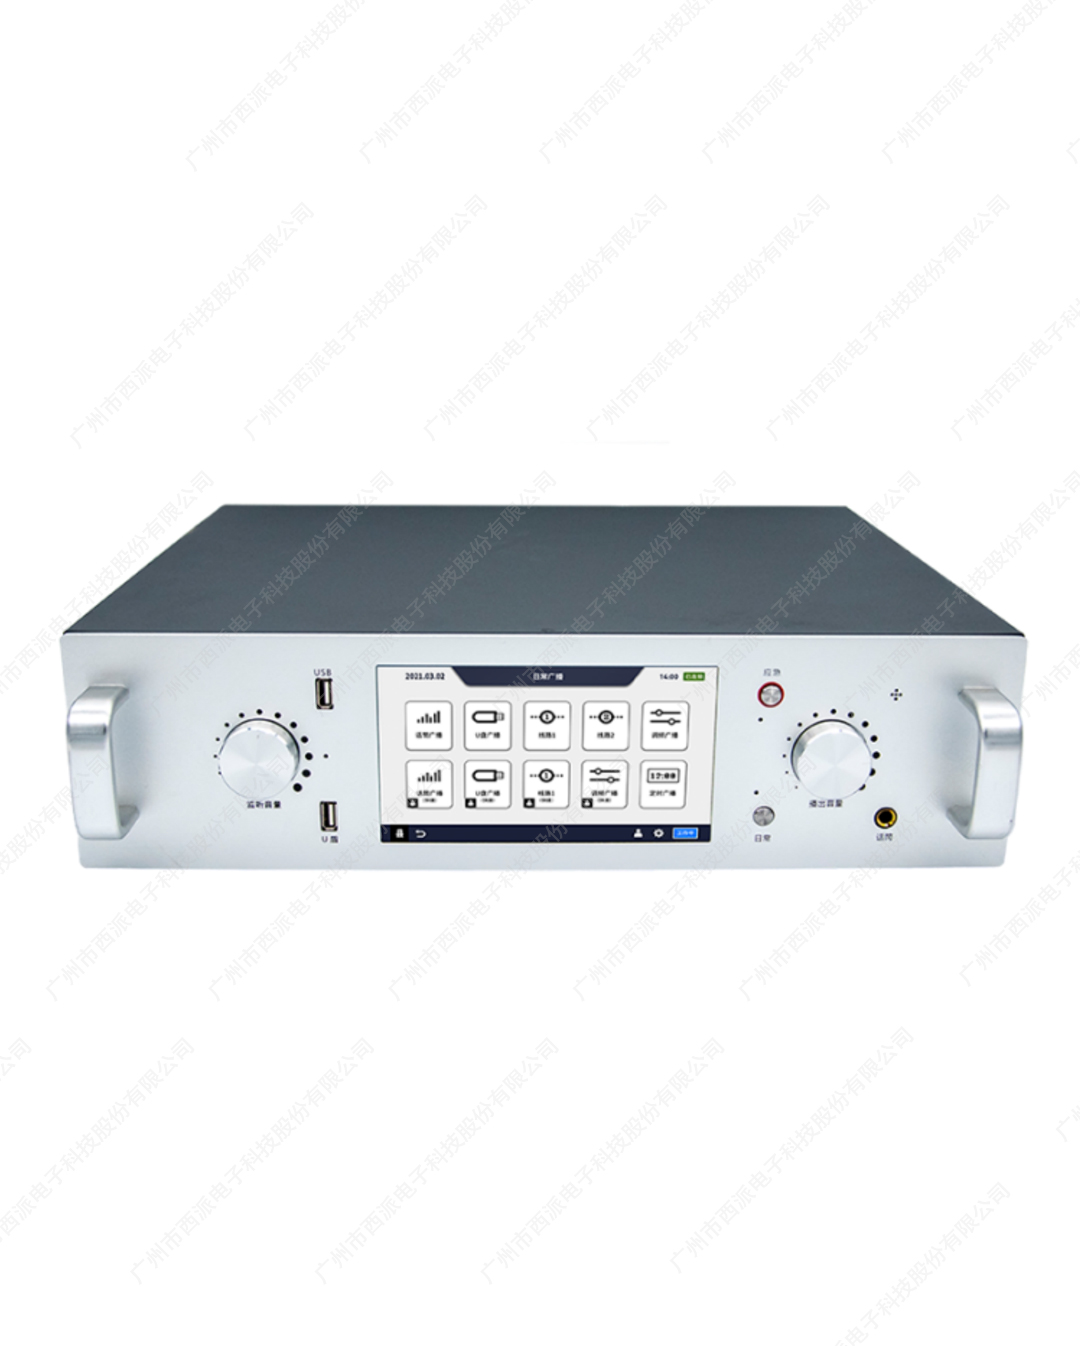 县级/地面数字/调频/应急广播适配器 CE-NB4005